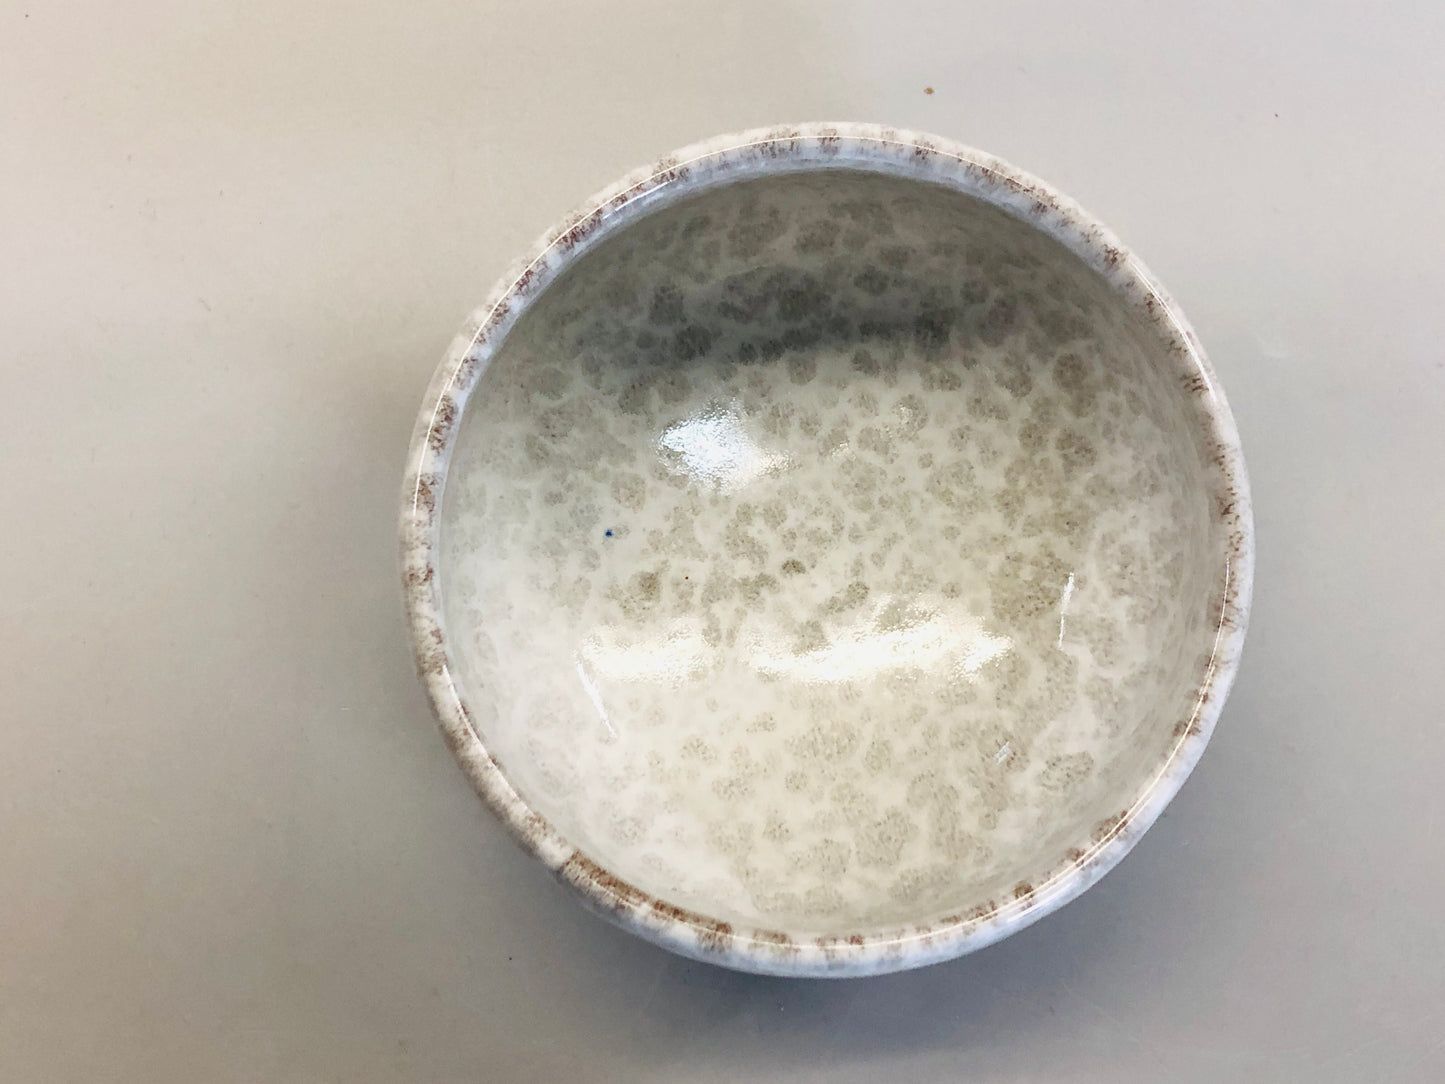 Y5335 CHAWAN Kisyu-ware signed box Japan antique tea ceremony pottery vintage